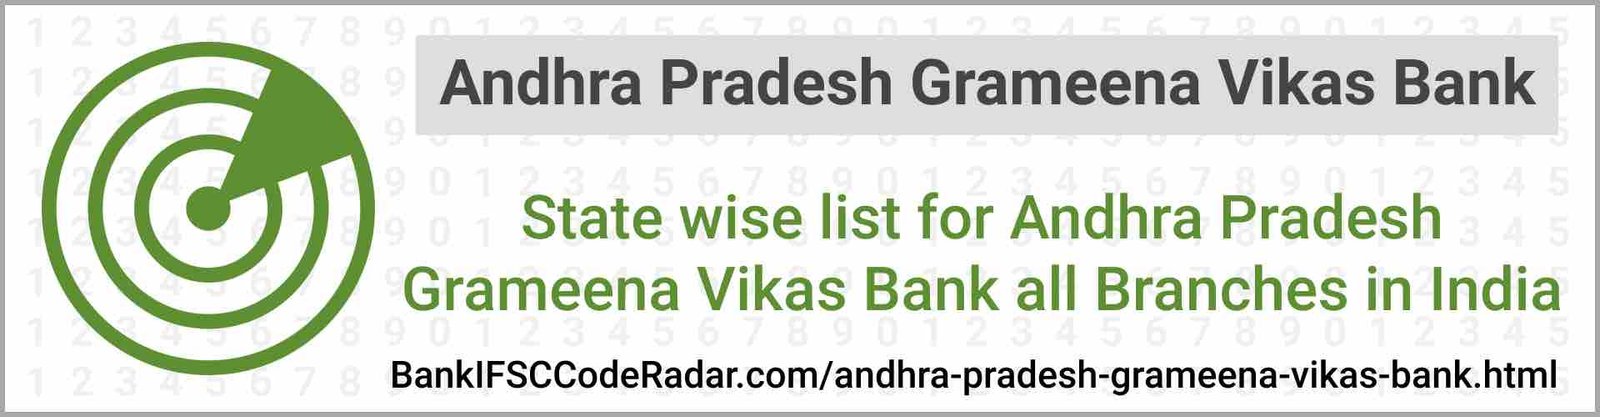 Andhra Pradesh Grameena Vikas Bank All Branches India